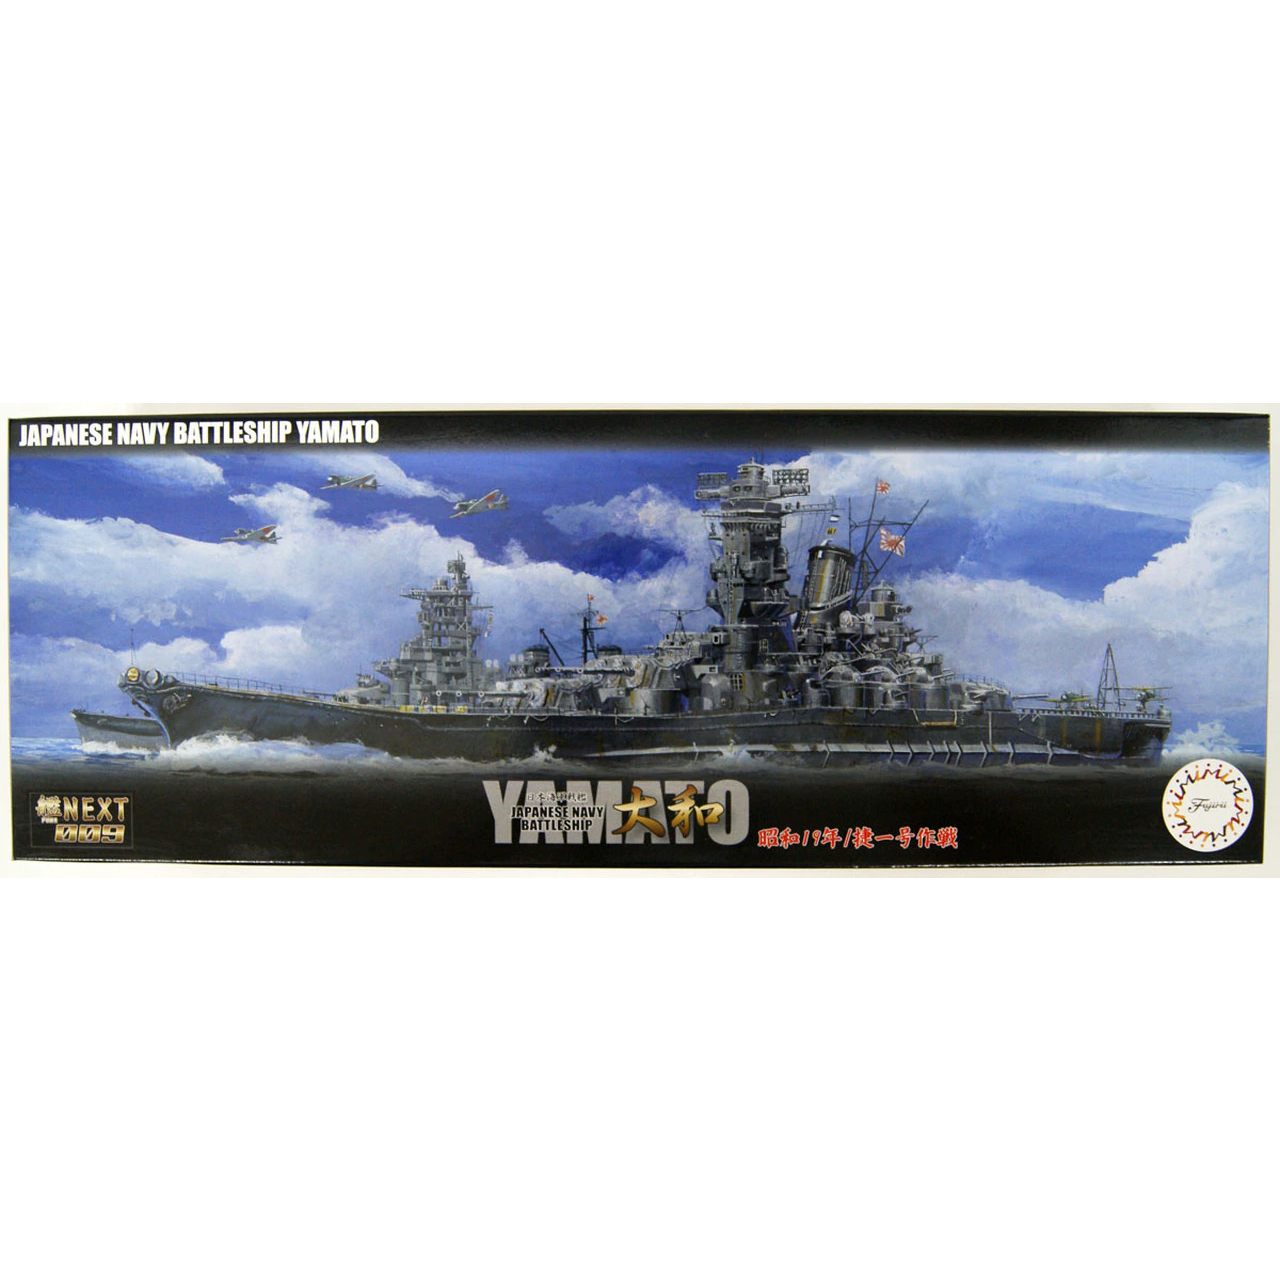 IJN Battleship Yamato 1/700 Model Ship Kit #460802 by Fujimi